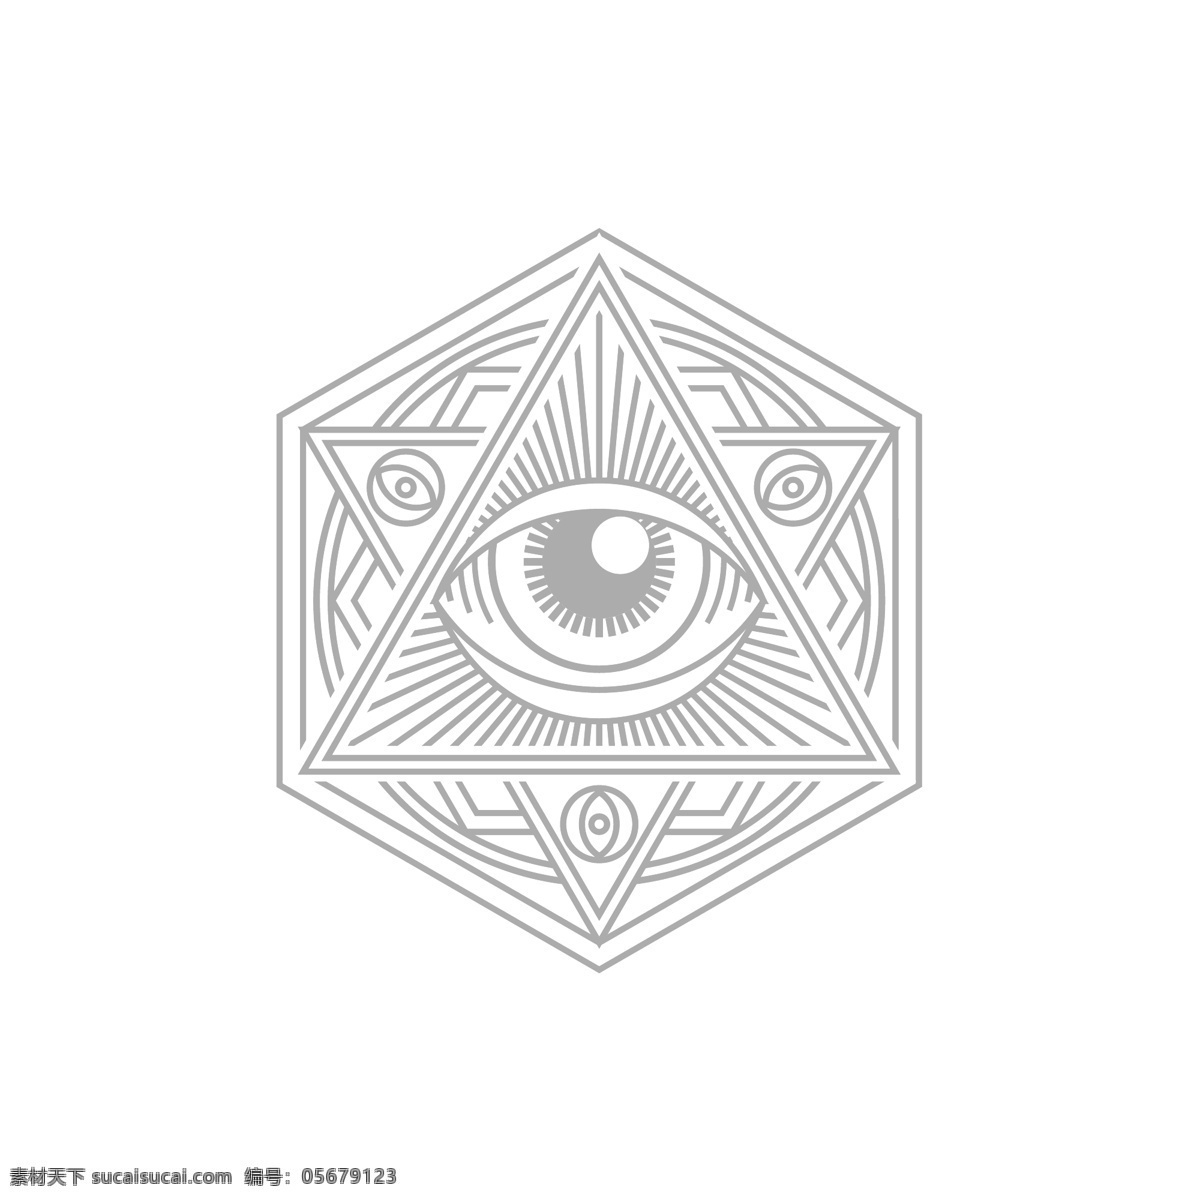 眼睛 线条 图案 六芒星 眼球 原创logo